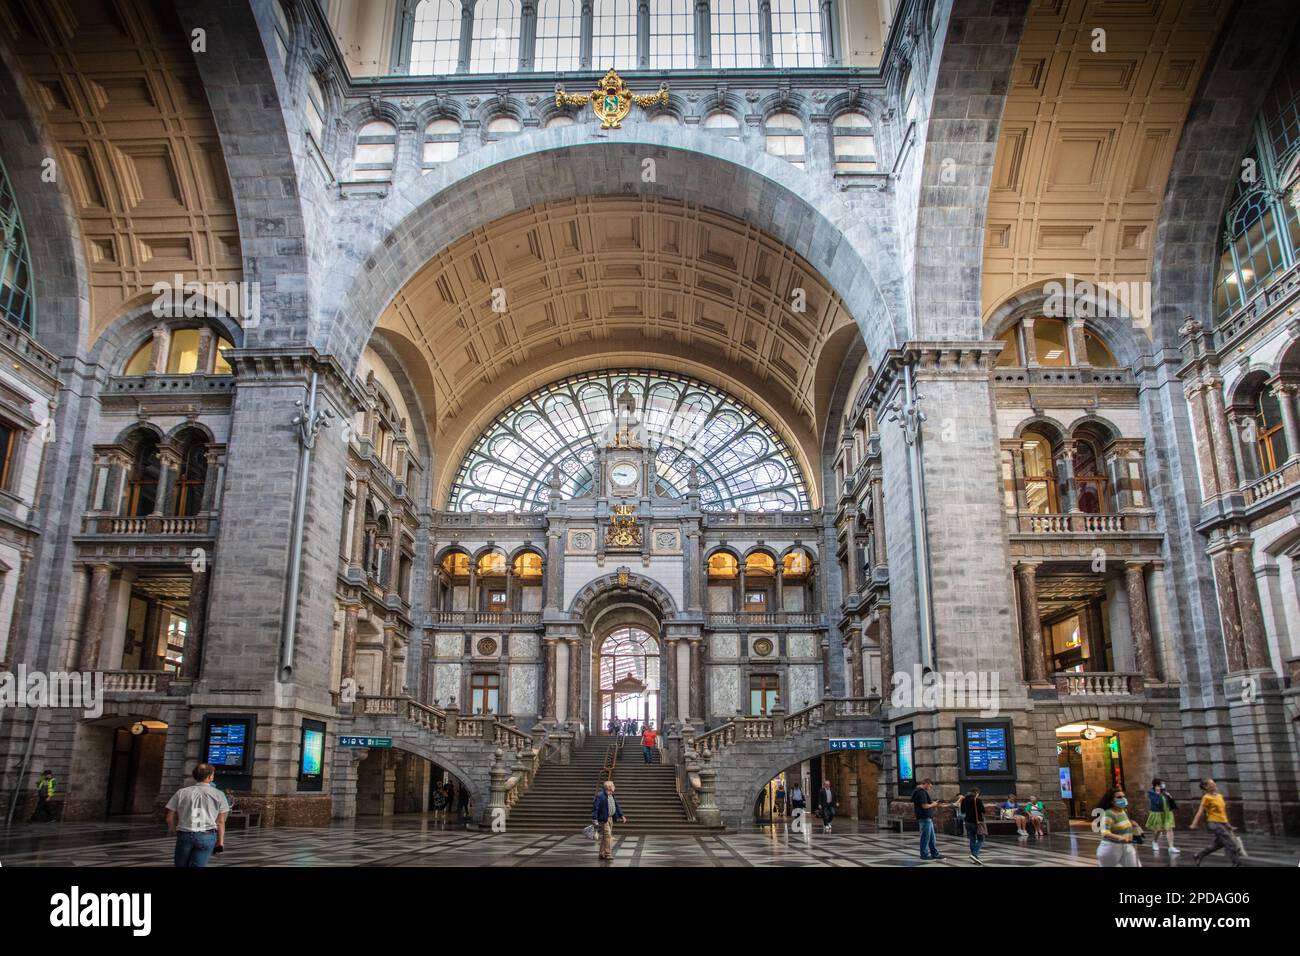 Antwerp Central Railway Station. Antwerpen-Centraal. Belgium. Stock Photo